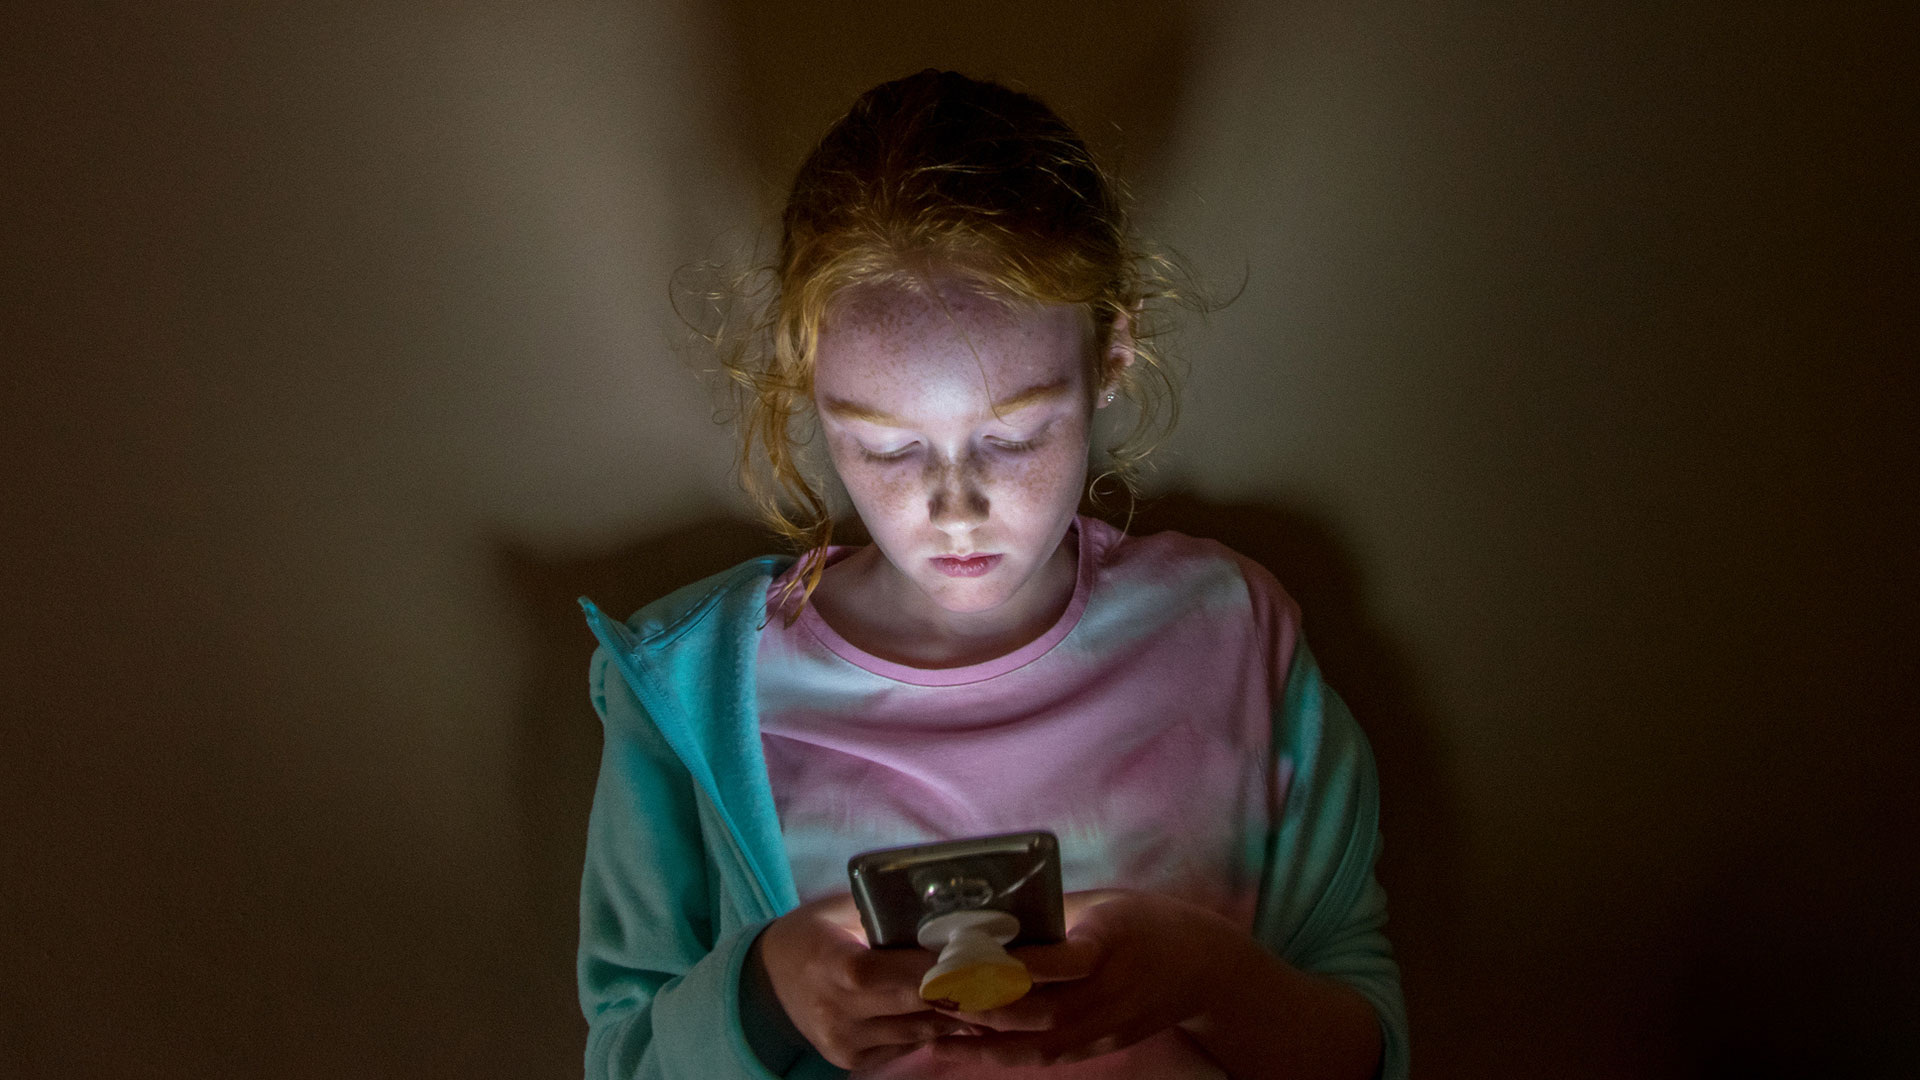 El uso frecuente de redes sociales podría provocar cambios en el cerebro de los adolescentes, según un estudio